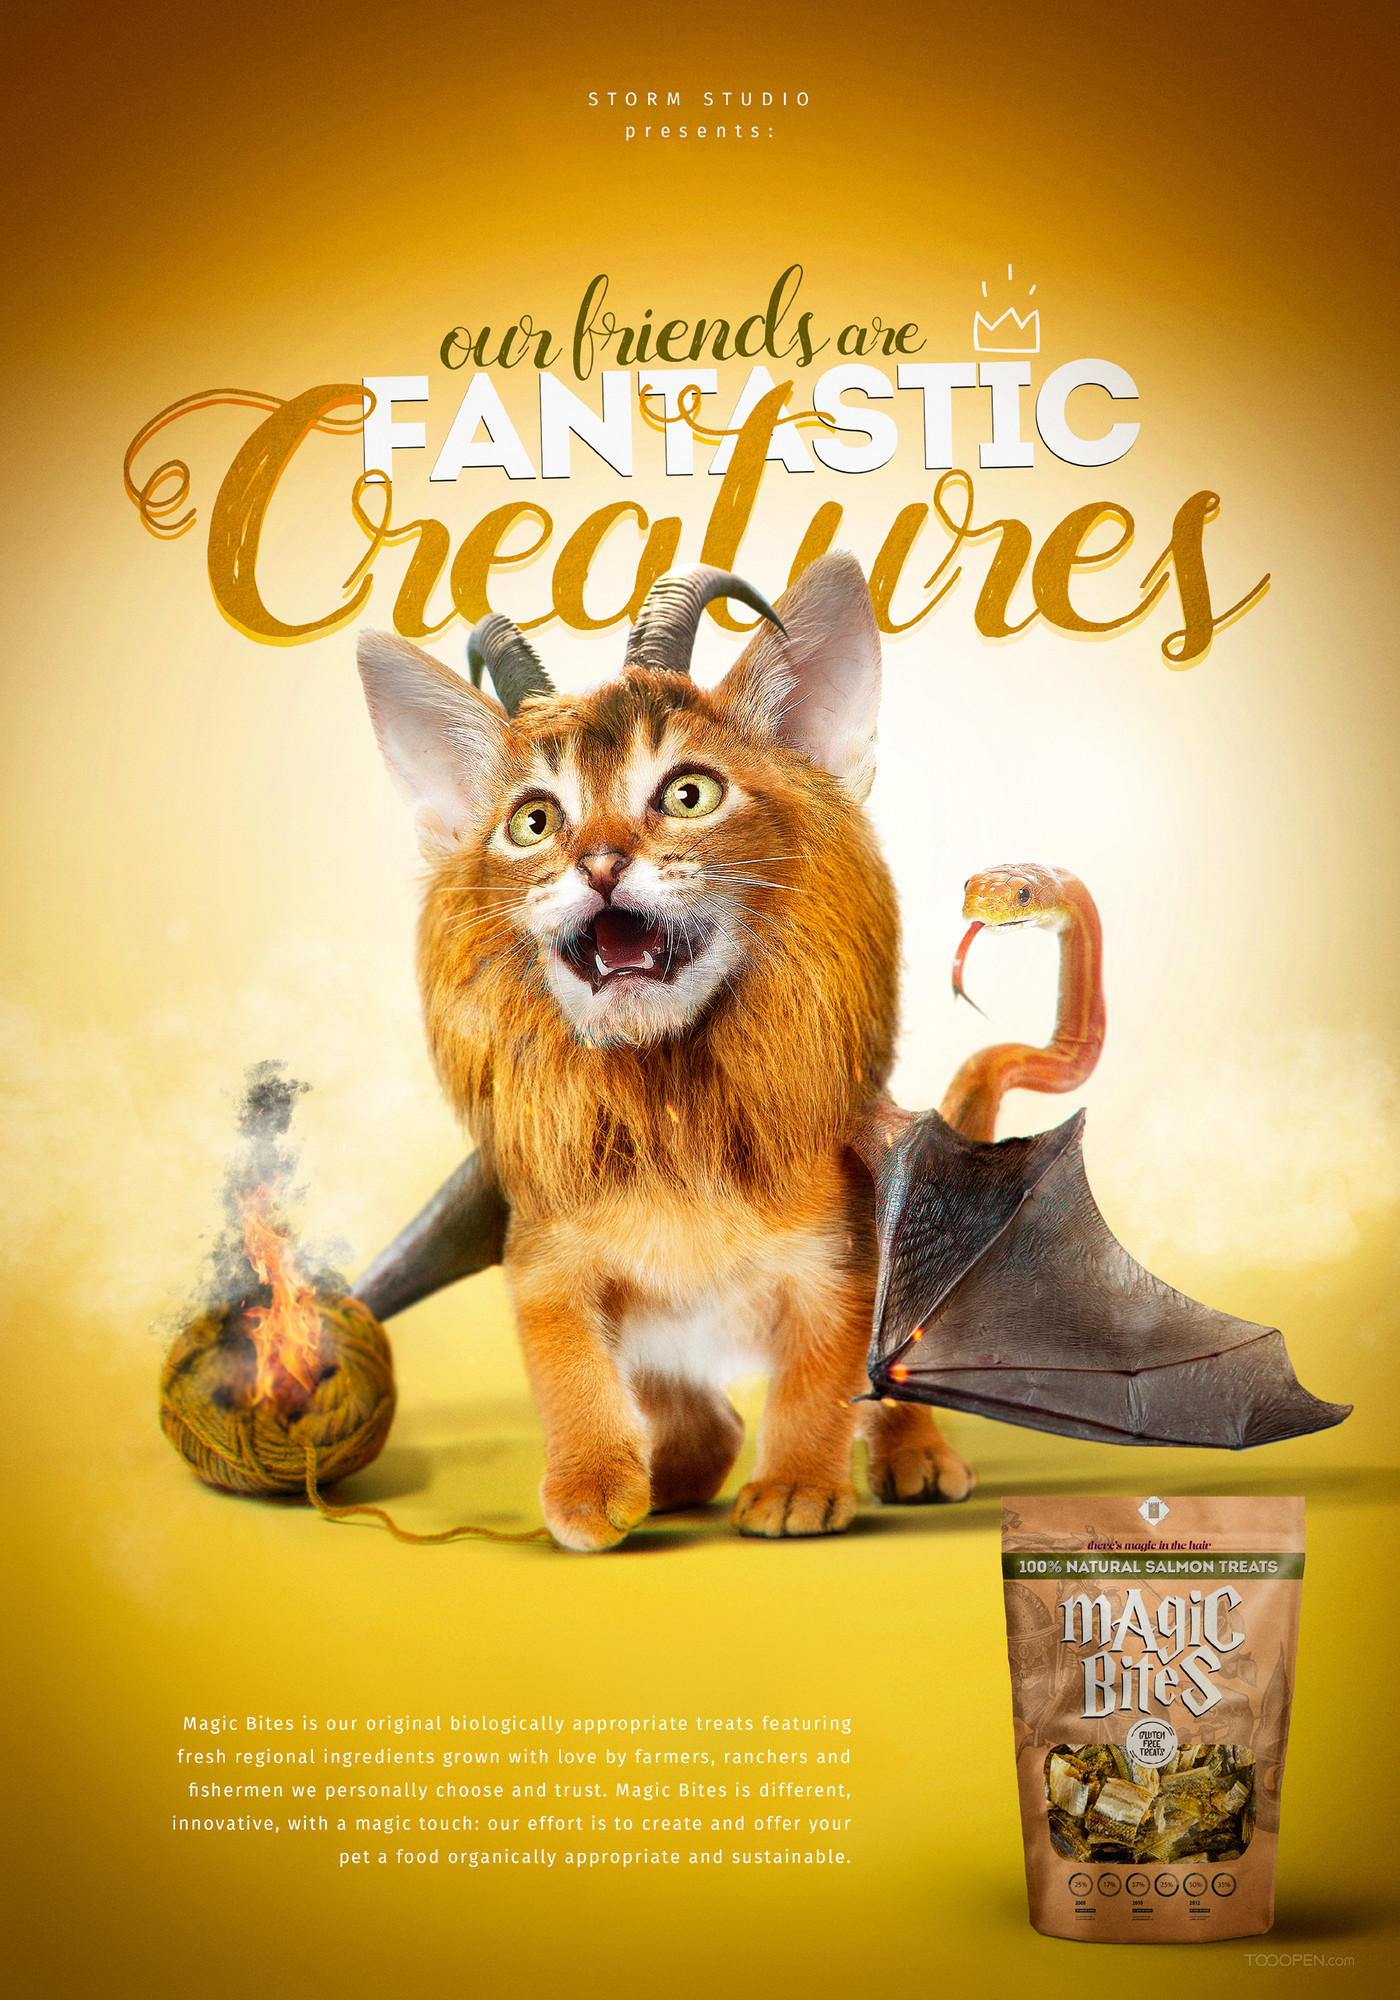 国外神奇的生物宠物食品创意海报设计欣赏-03